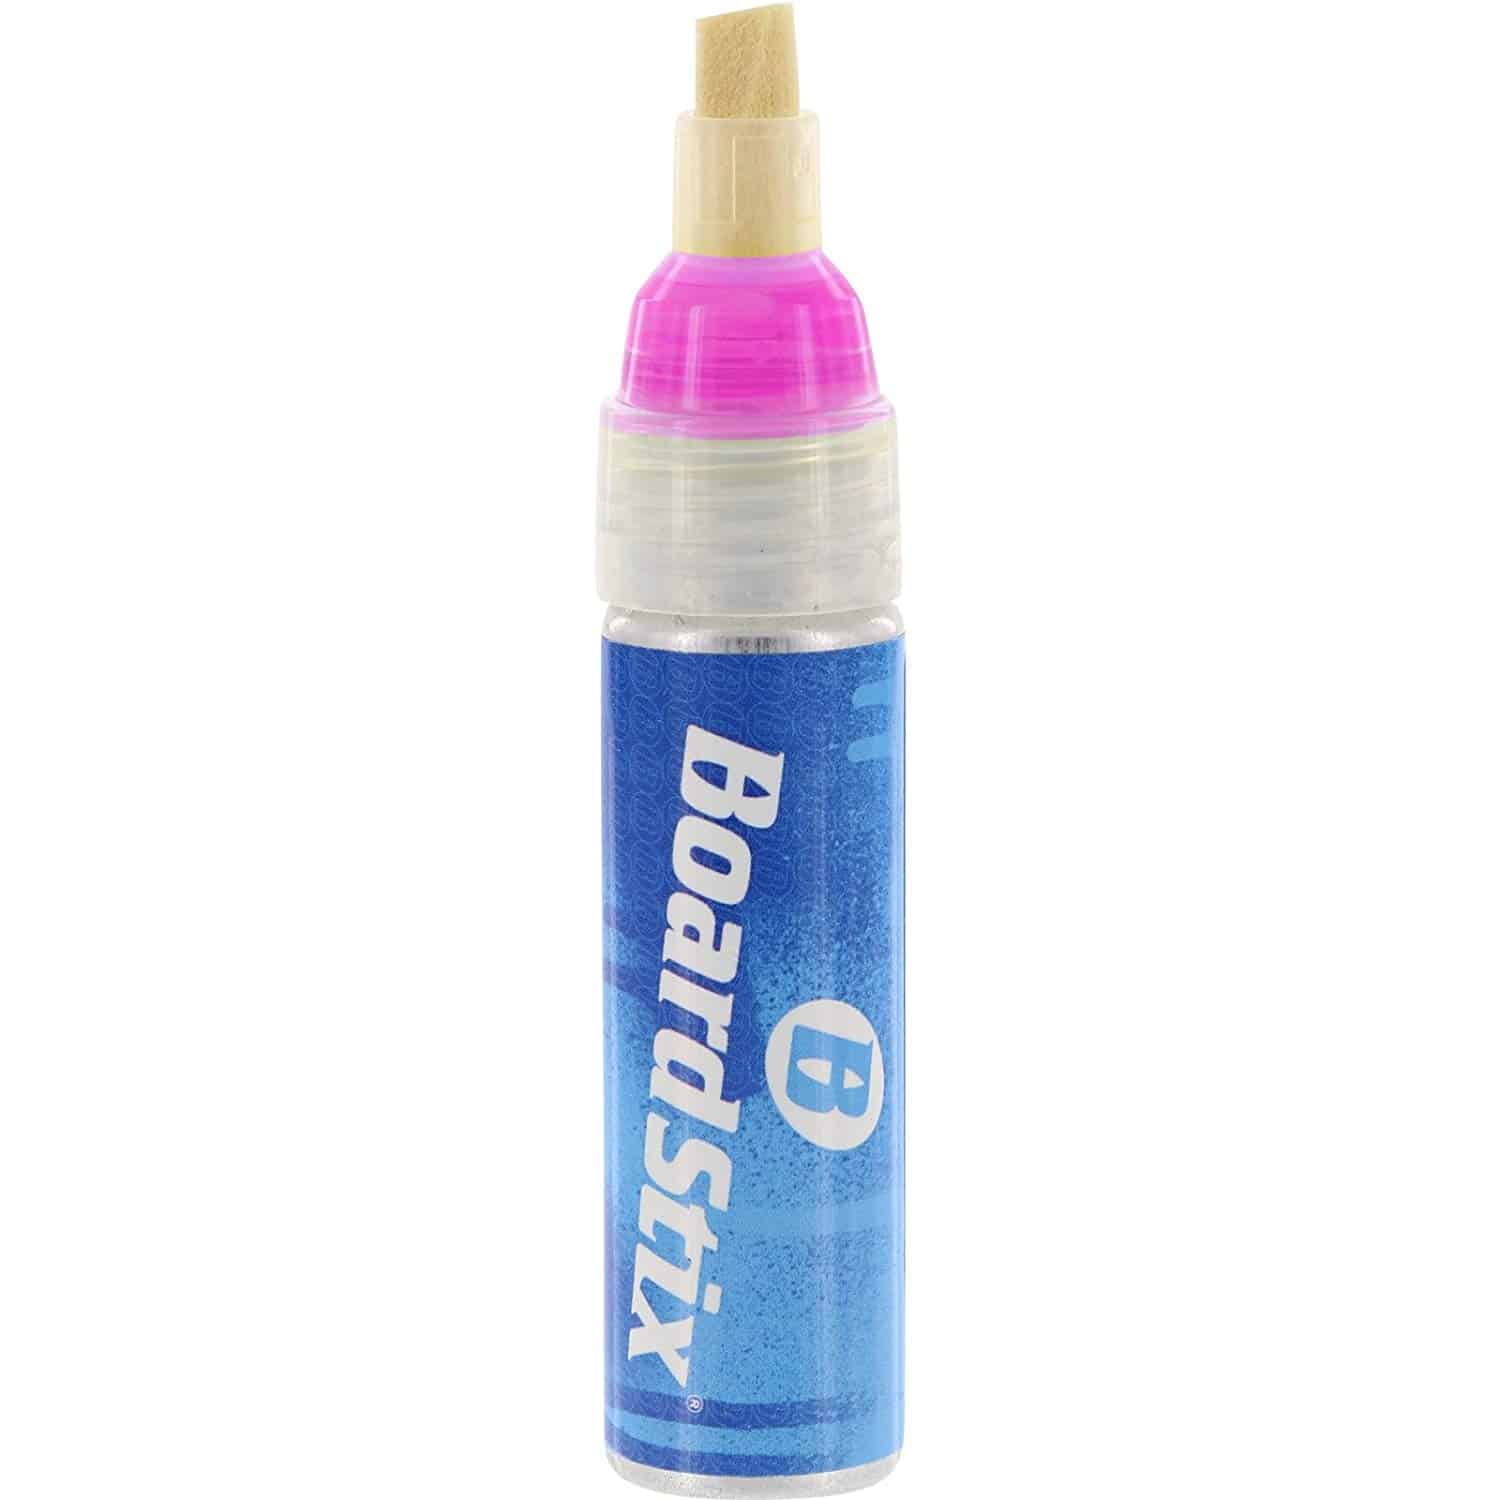 Paint Pen - Chisel Tip - 5mm - Fluorescent Pink